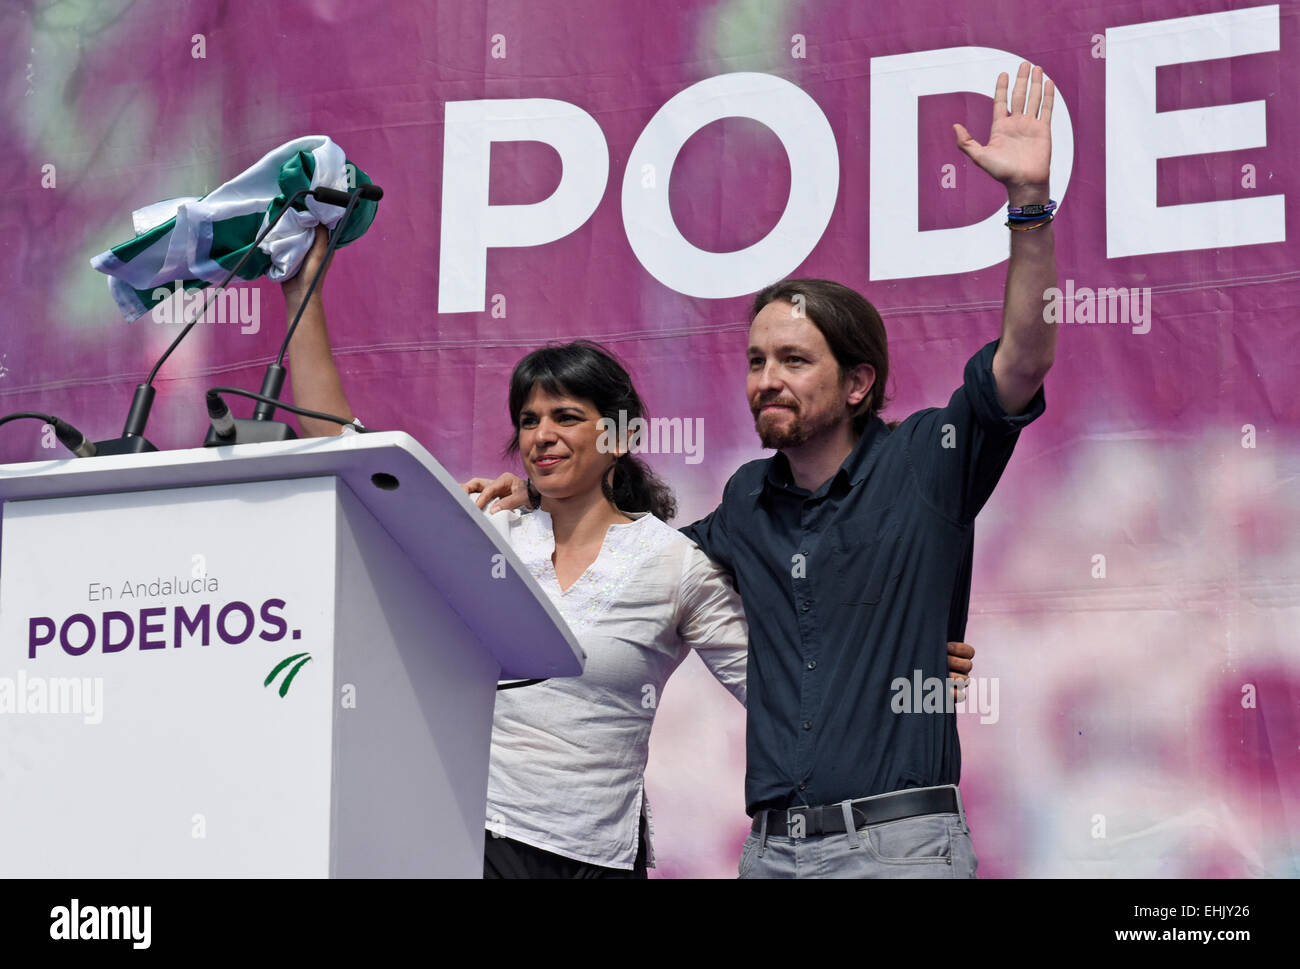 Pablo Iglesias leader e il deputato spagnolo del partito politico Podemos, supporto di Teresa Rodriquez europarlamentare e candidato presidenziale per la Junta de Andalusia in un rally in Plaza de la Merced, Malaga Spagna sabato 14 marzo 2015. Teresa sta tenendo il verde e bandiera bianca di andalusia andalusia Foto Stock